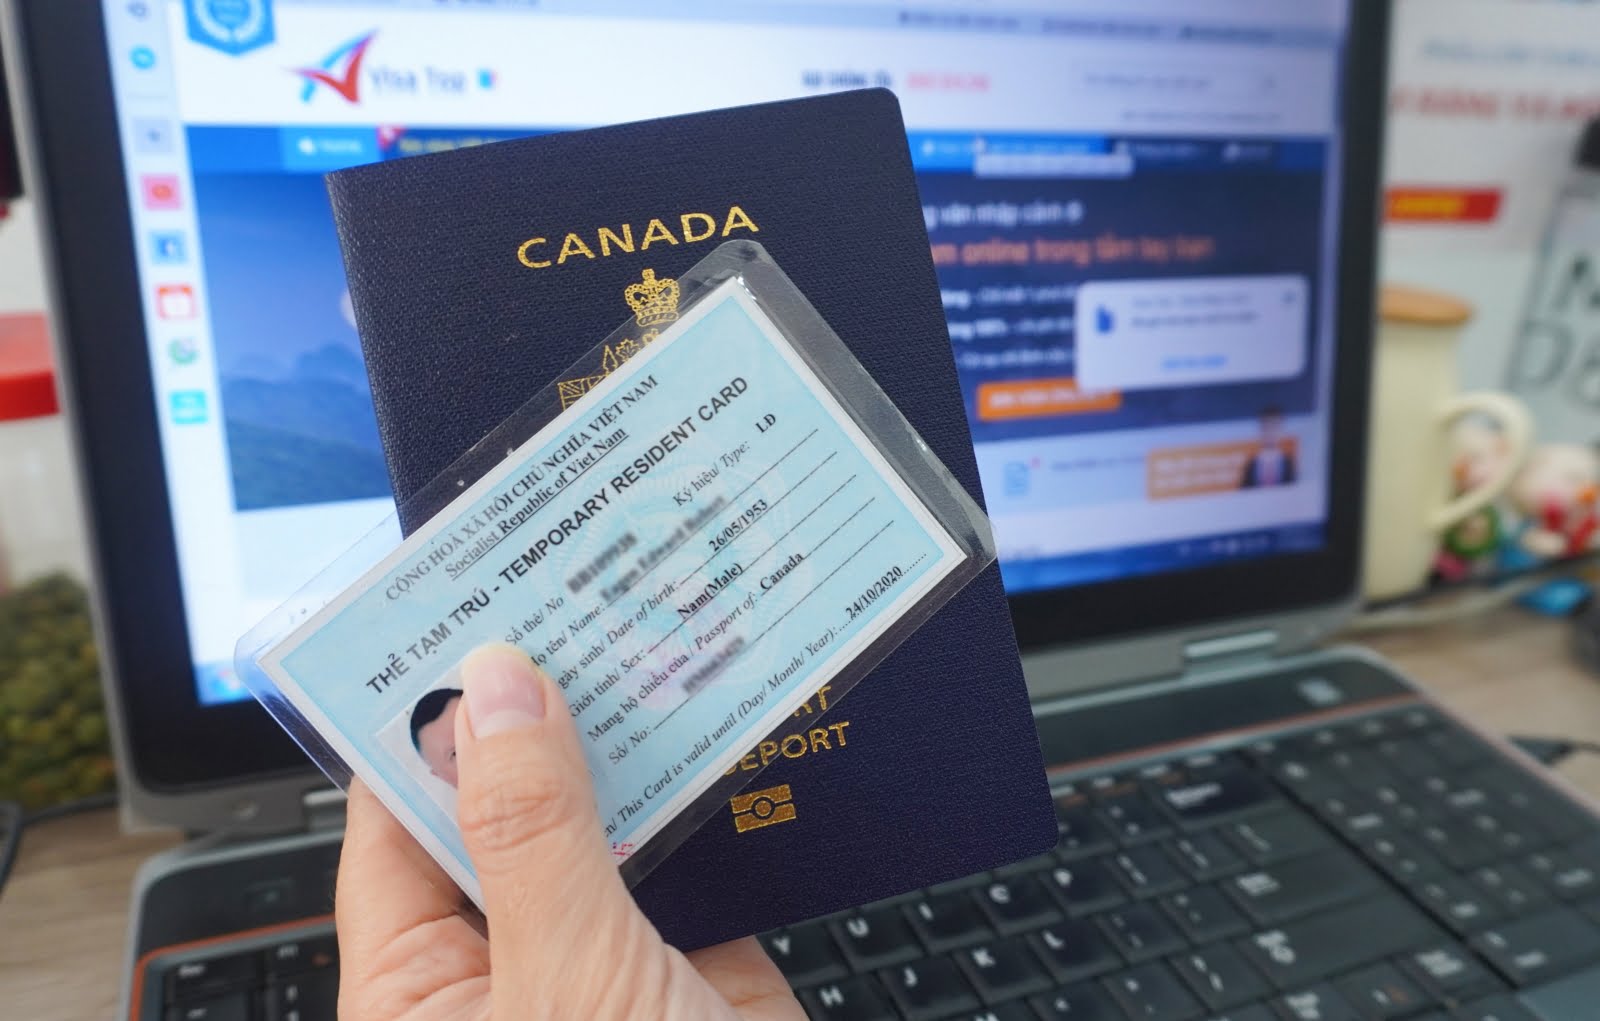 Thủ tục cấp thẻ tạm trú cho người nước ngoài tại Việt Nam 2022 - Thủ tục cấp nhanh chóng, đơn giản